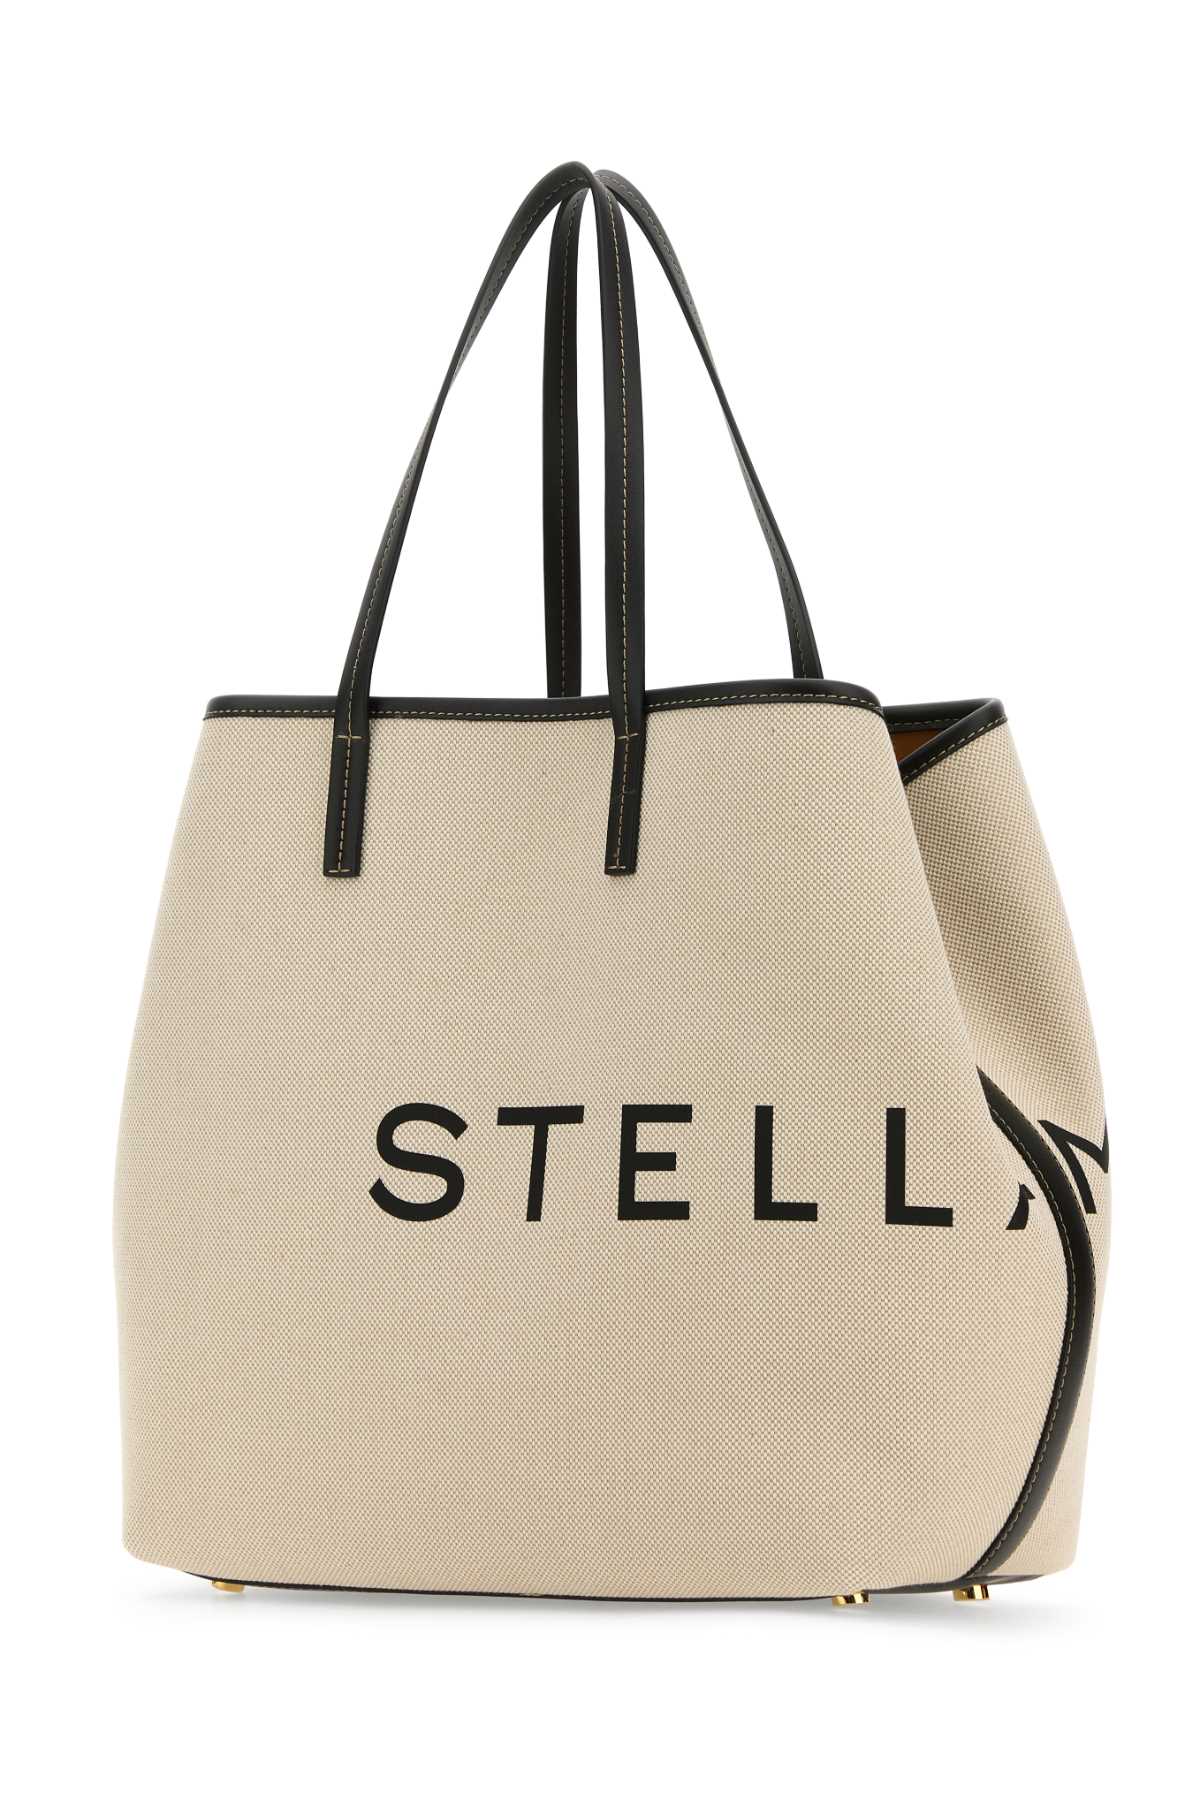 Stella Mccartney Sand Canvas Logo Shopping Bag In Ecru